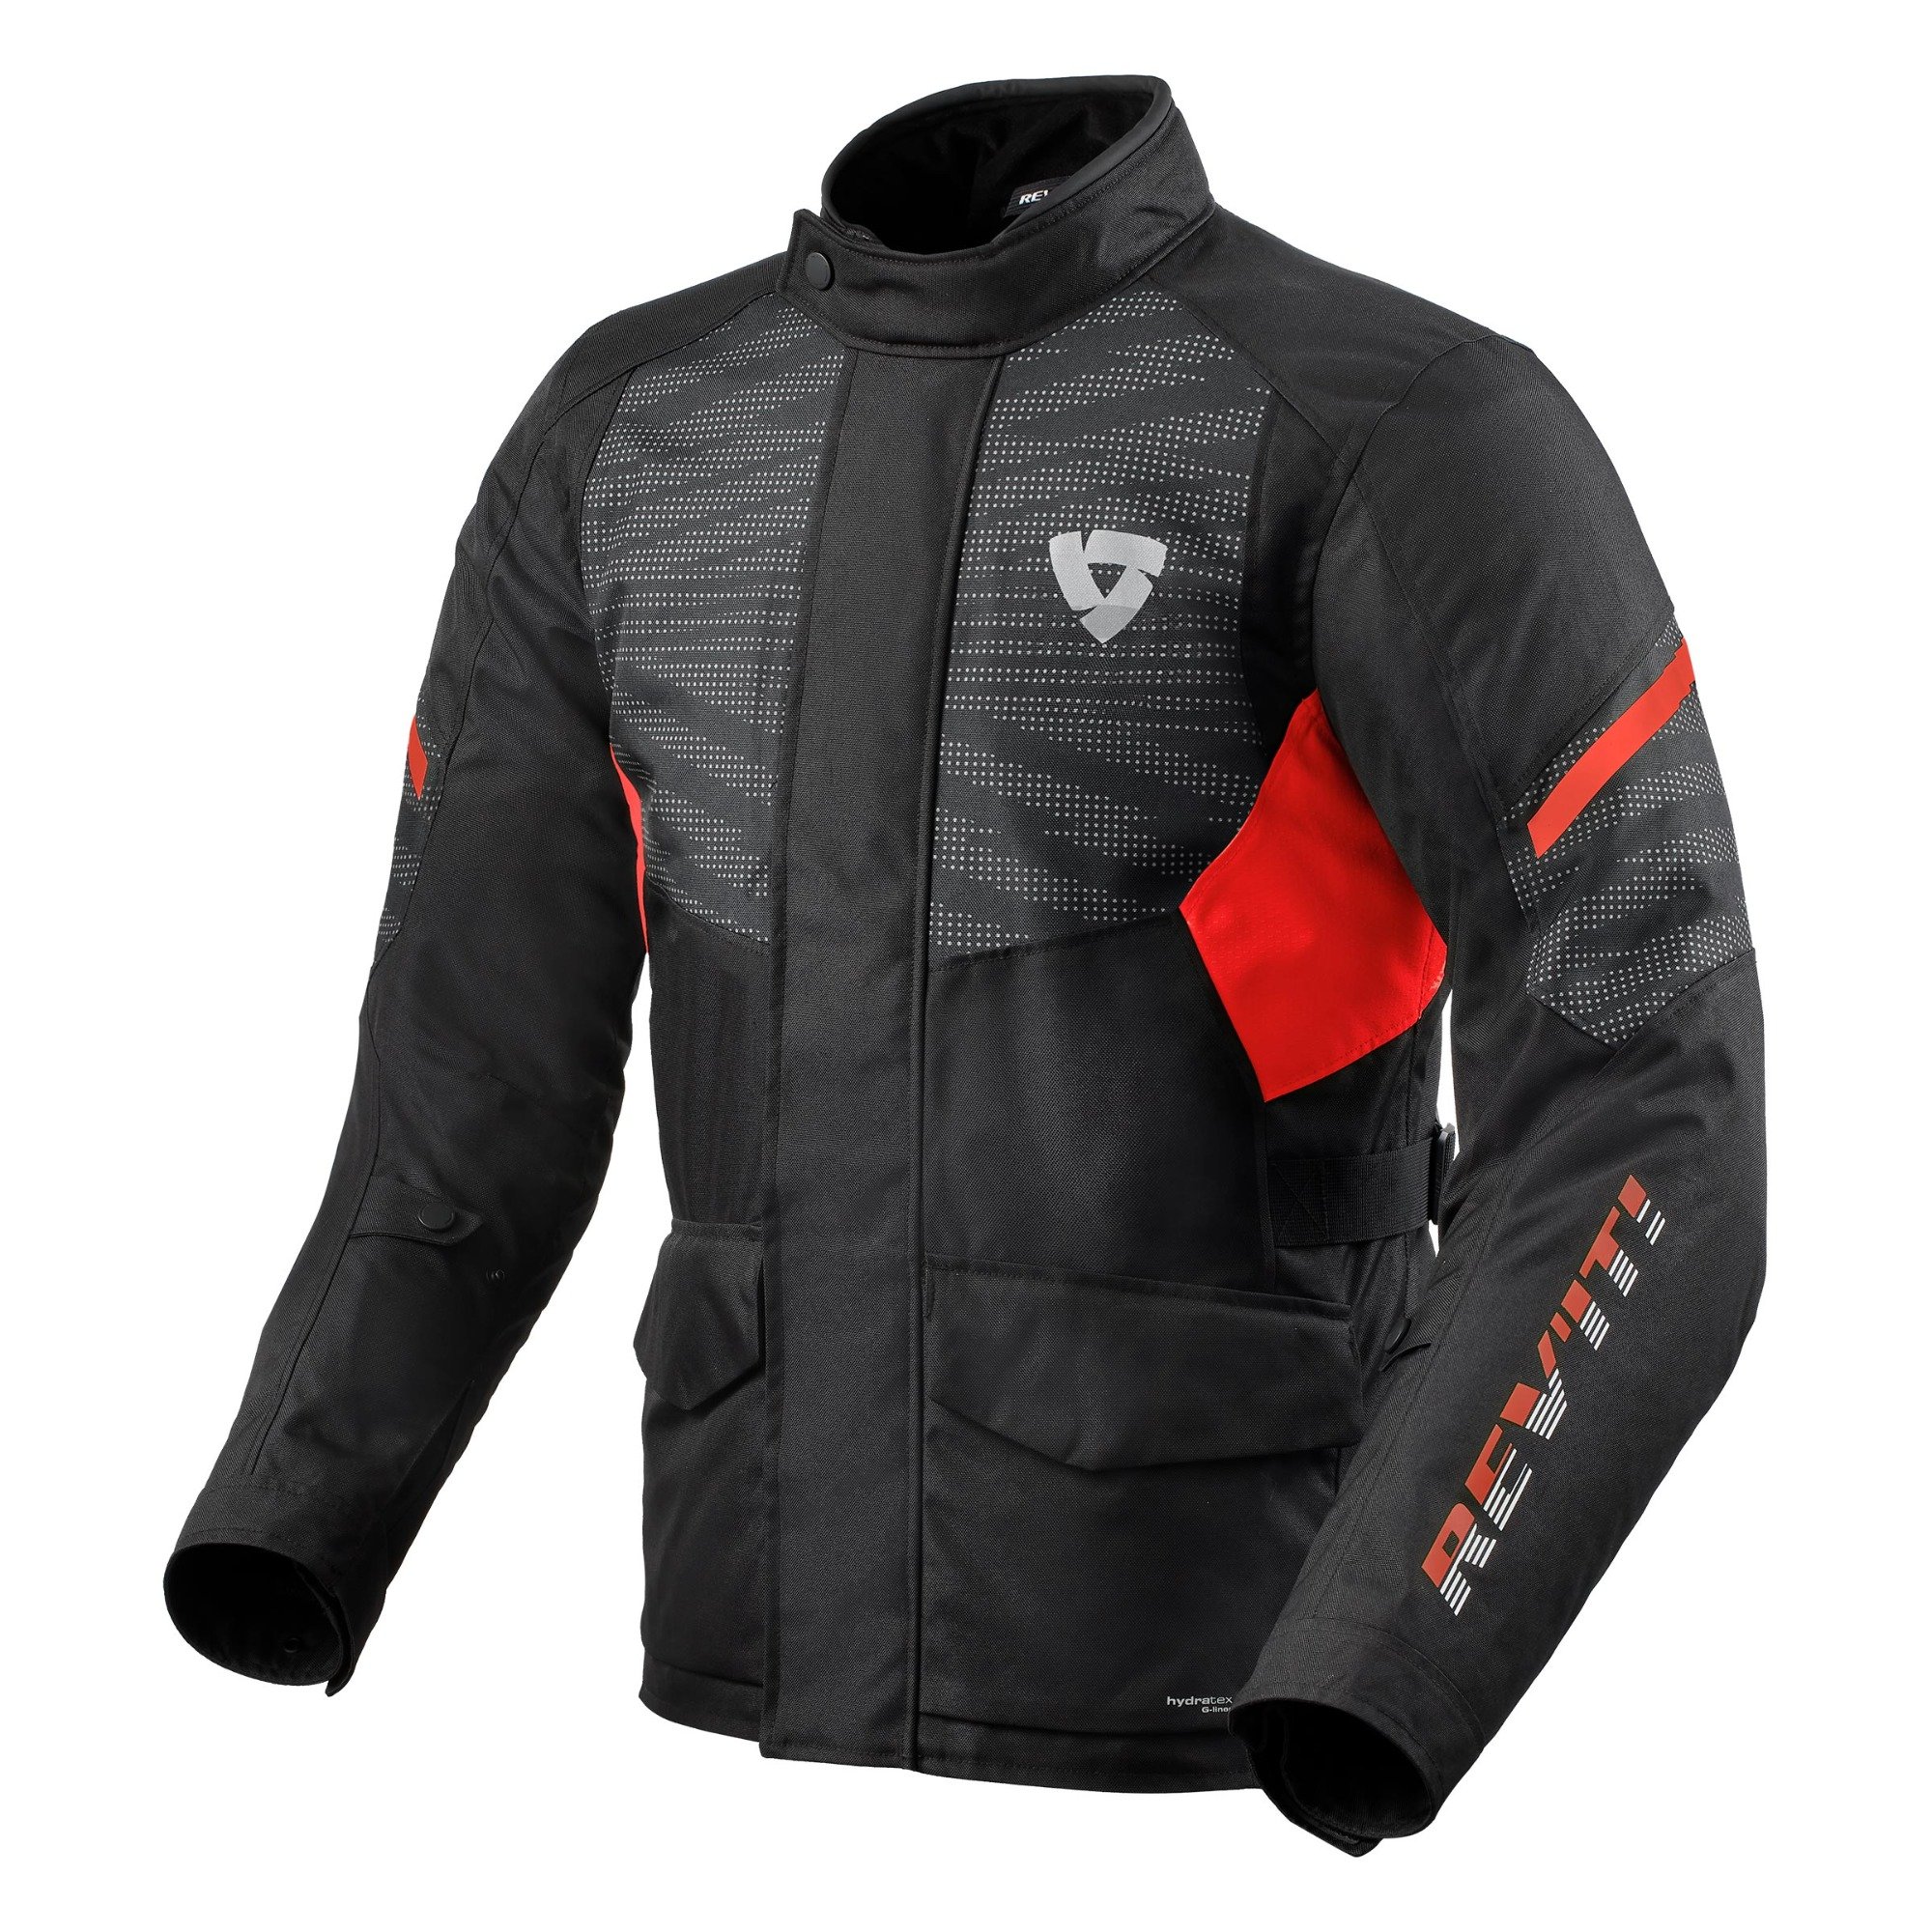 Image of REV'IT! Duke H2O Jacket Black Red Size L EN